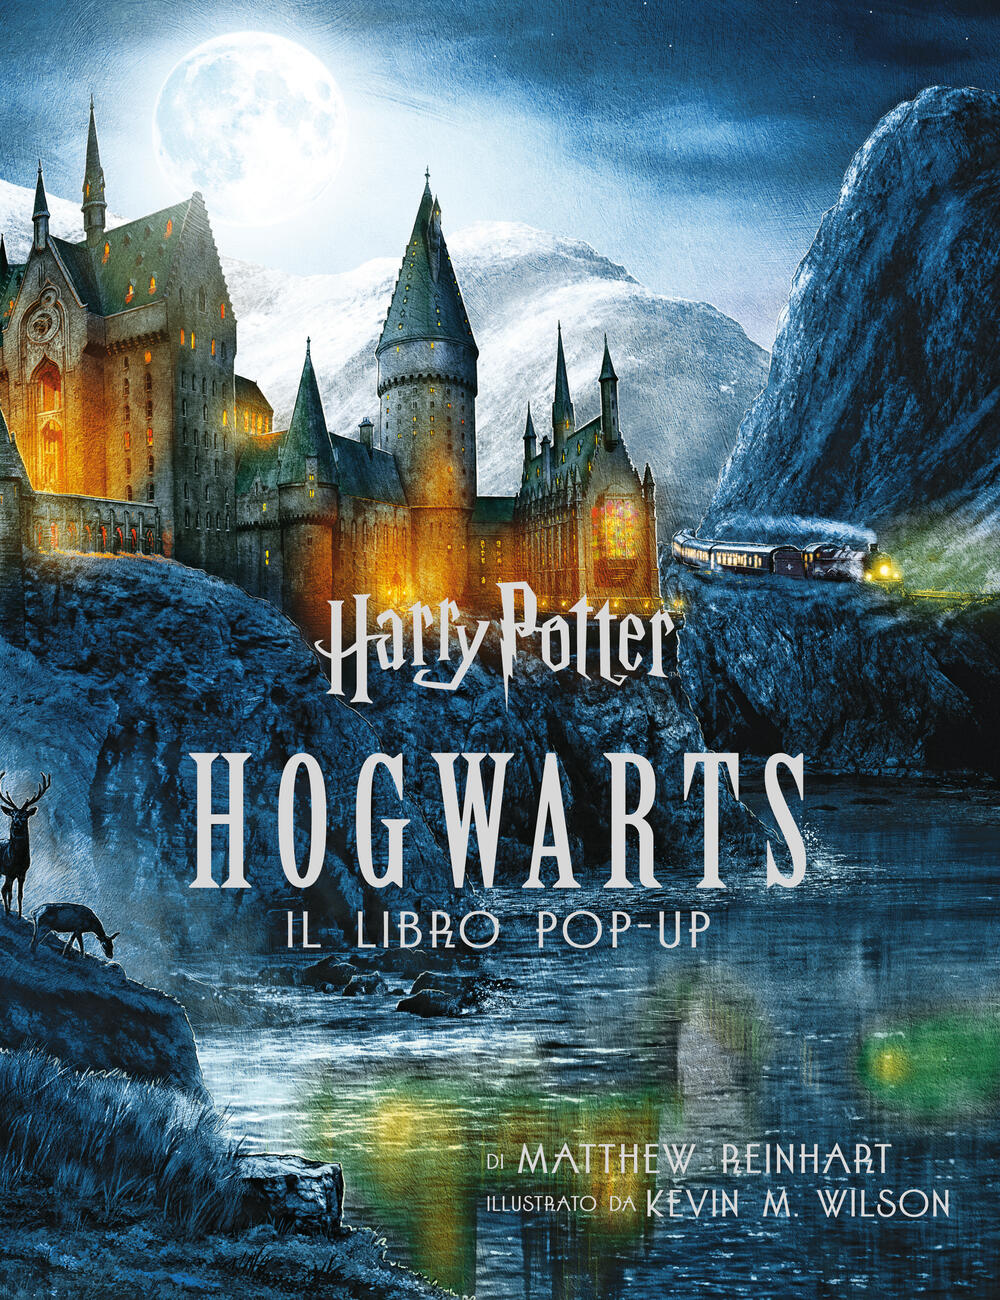 Harry Potter. Hogwarts. Il libro pop-up di J.K.Rowling Wizarding World -  J.K. ROWLING'S WIZARDING WORLD - Il Libraio